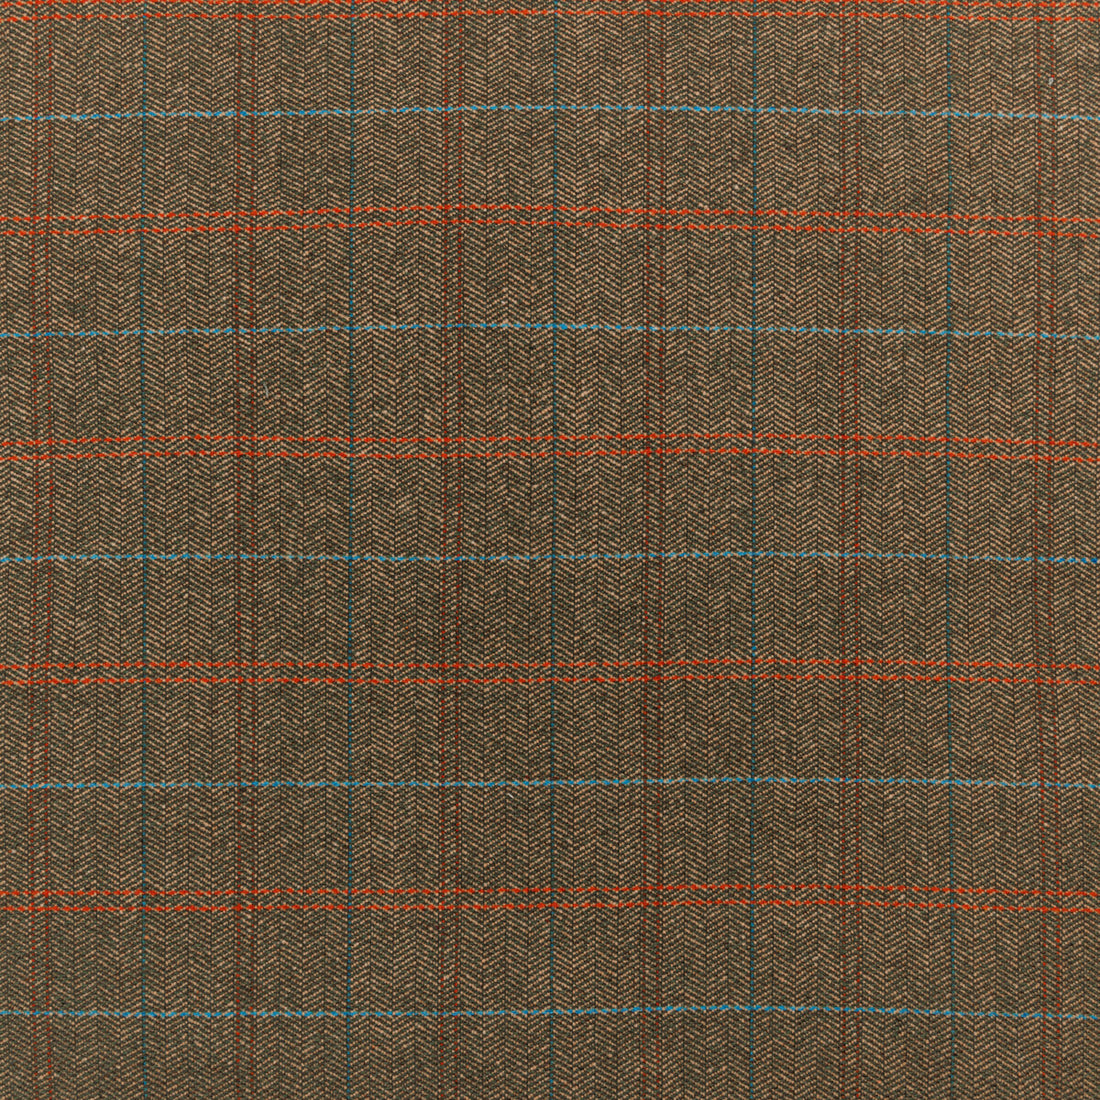 Kravet Design fabric in 36310-6 color - pattern 36310.6.0 - by Kravet Design